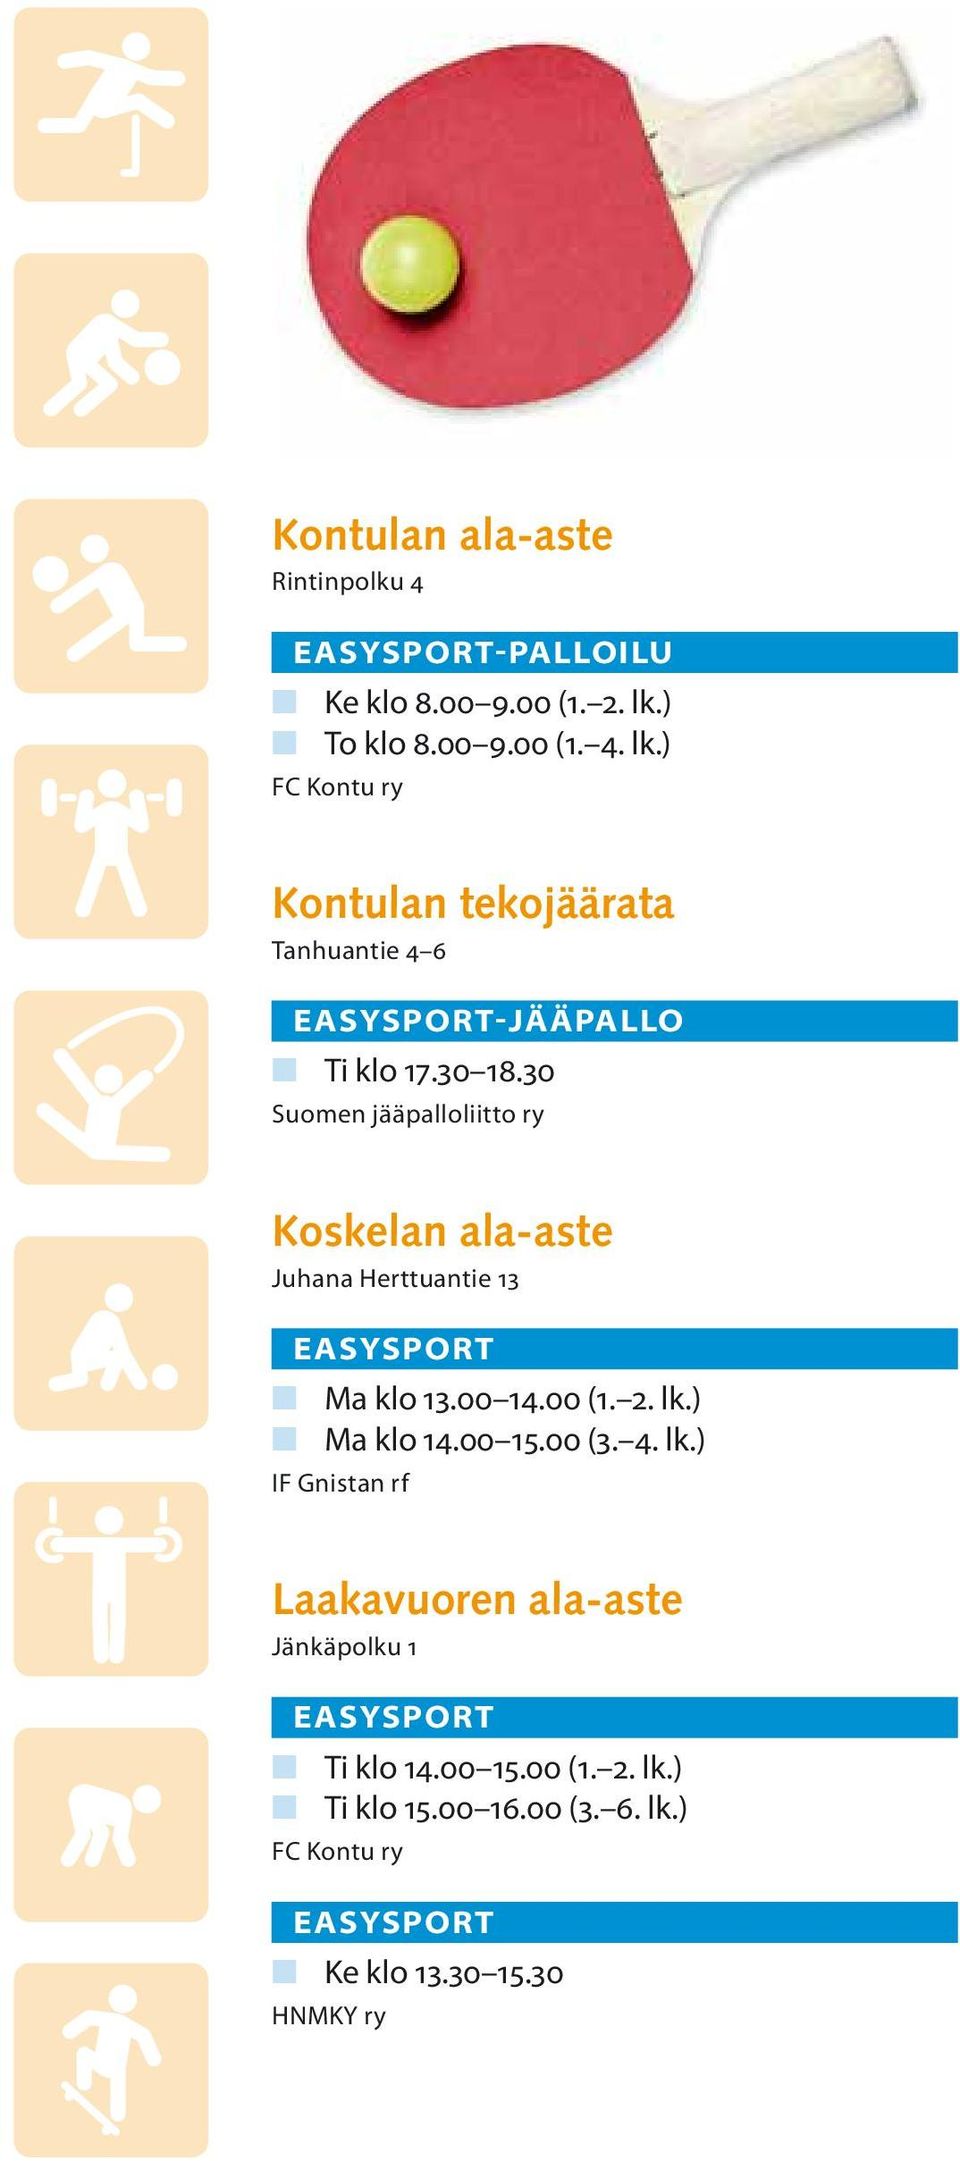 30 Suomen jääpalloliitto ry Koskelan ala-aste Juhana Herttuantie 13 n Ma klo 13.00 14.00 (1. 2. lk.) n Ma klo 14.